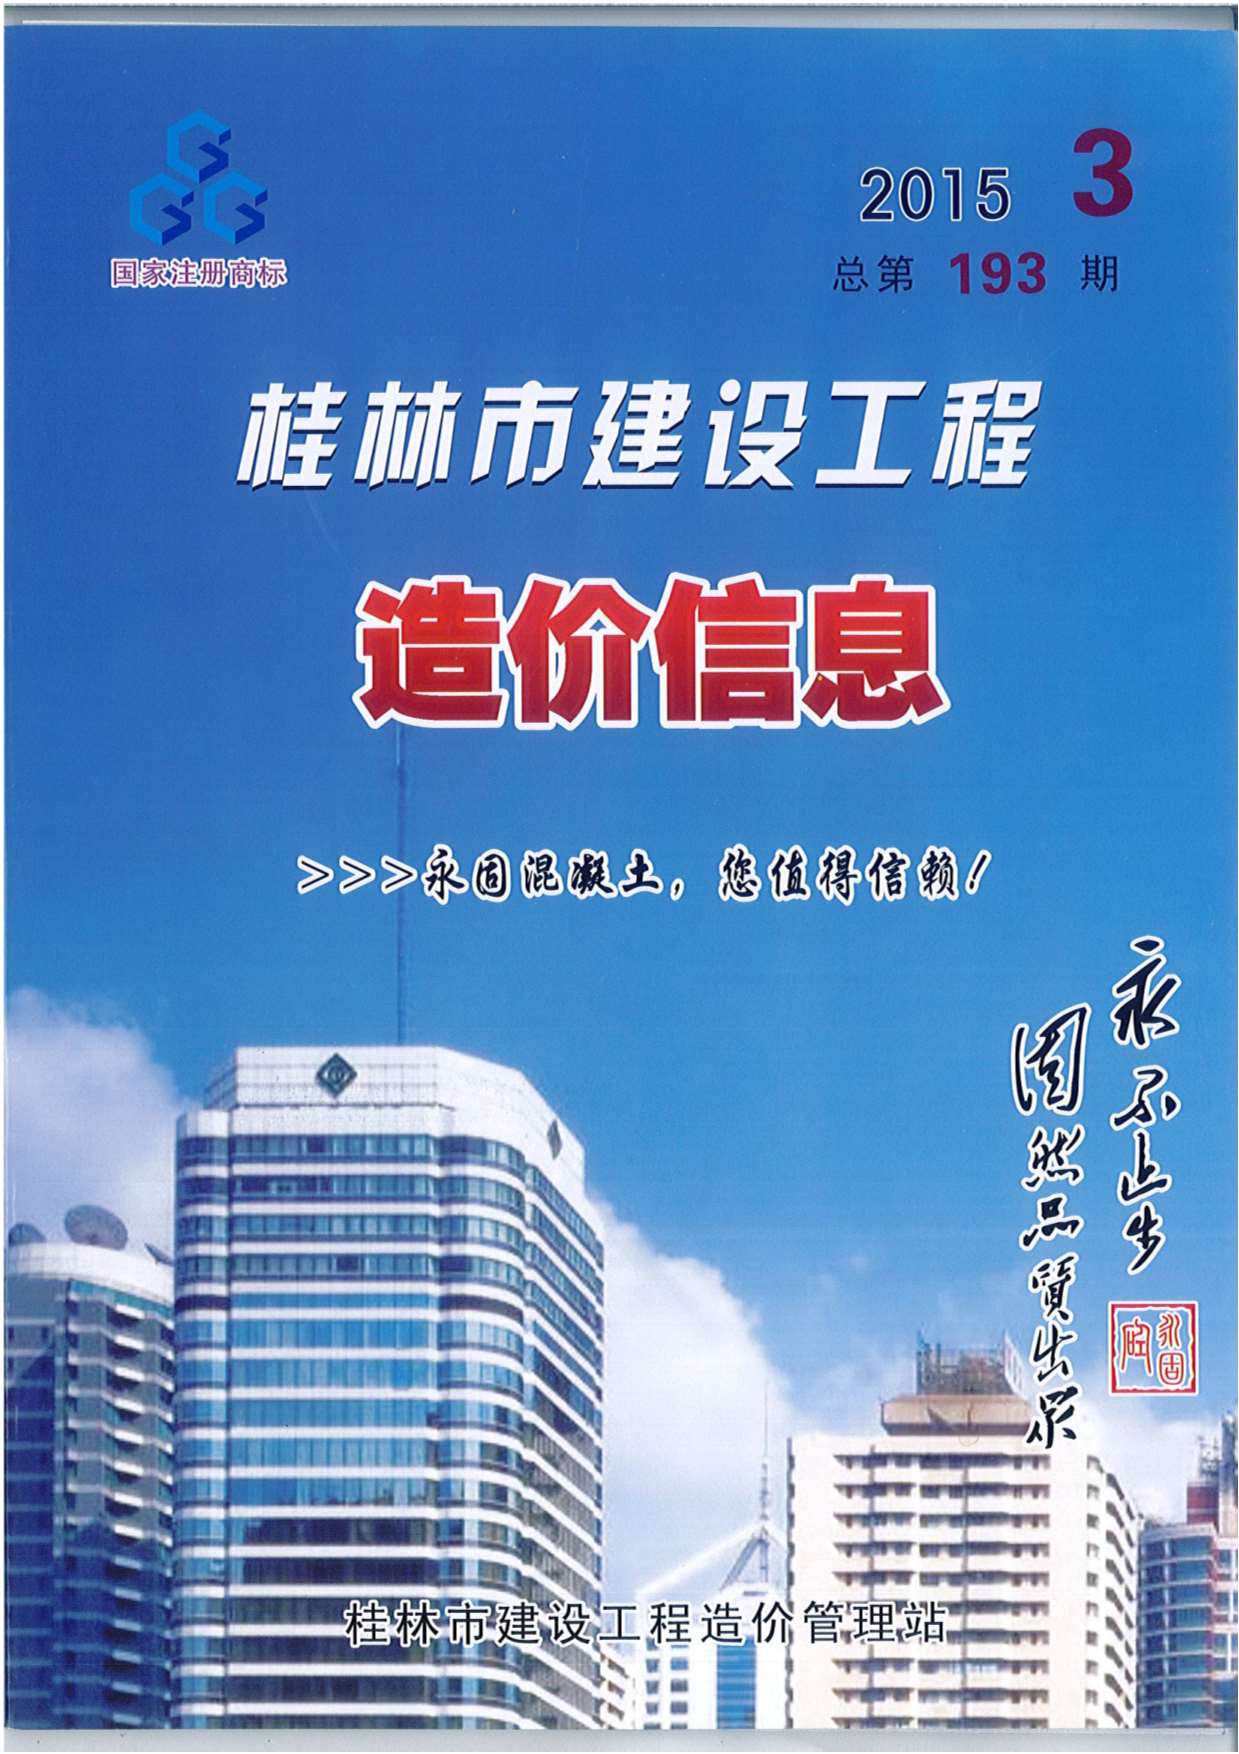 桂林市2015年3月建设工程造价信息